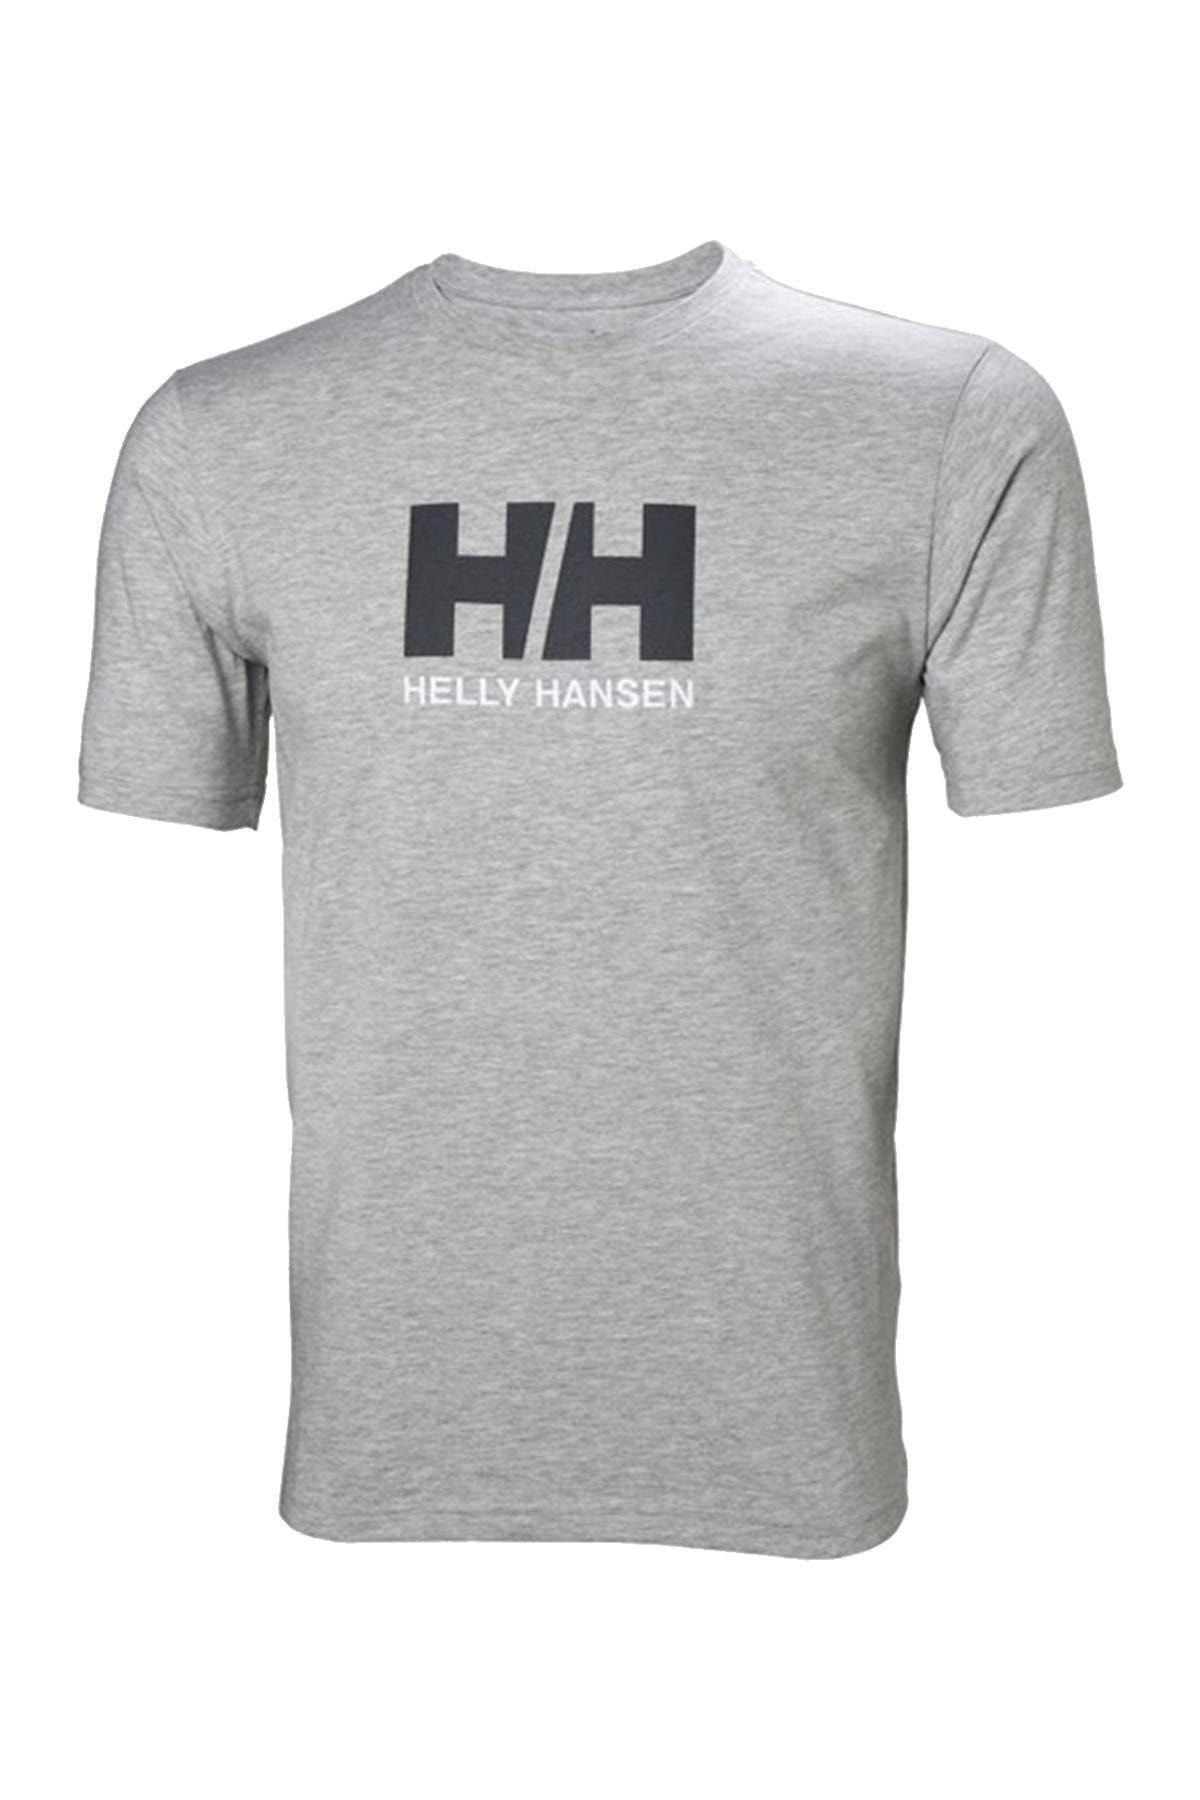 Helly Hansen Hha.33979 - Hh Logo Erkek T-shirt